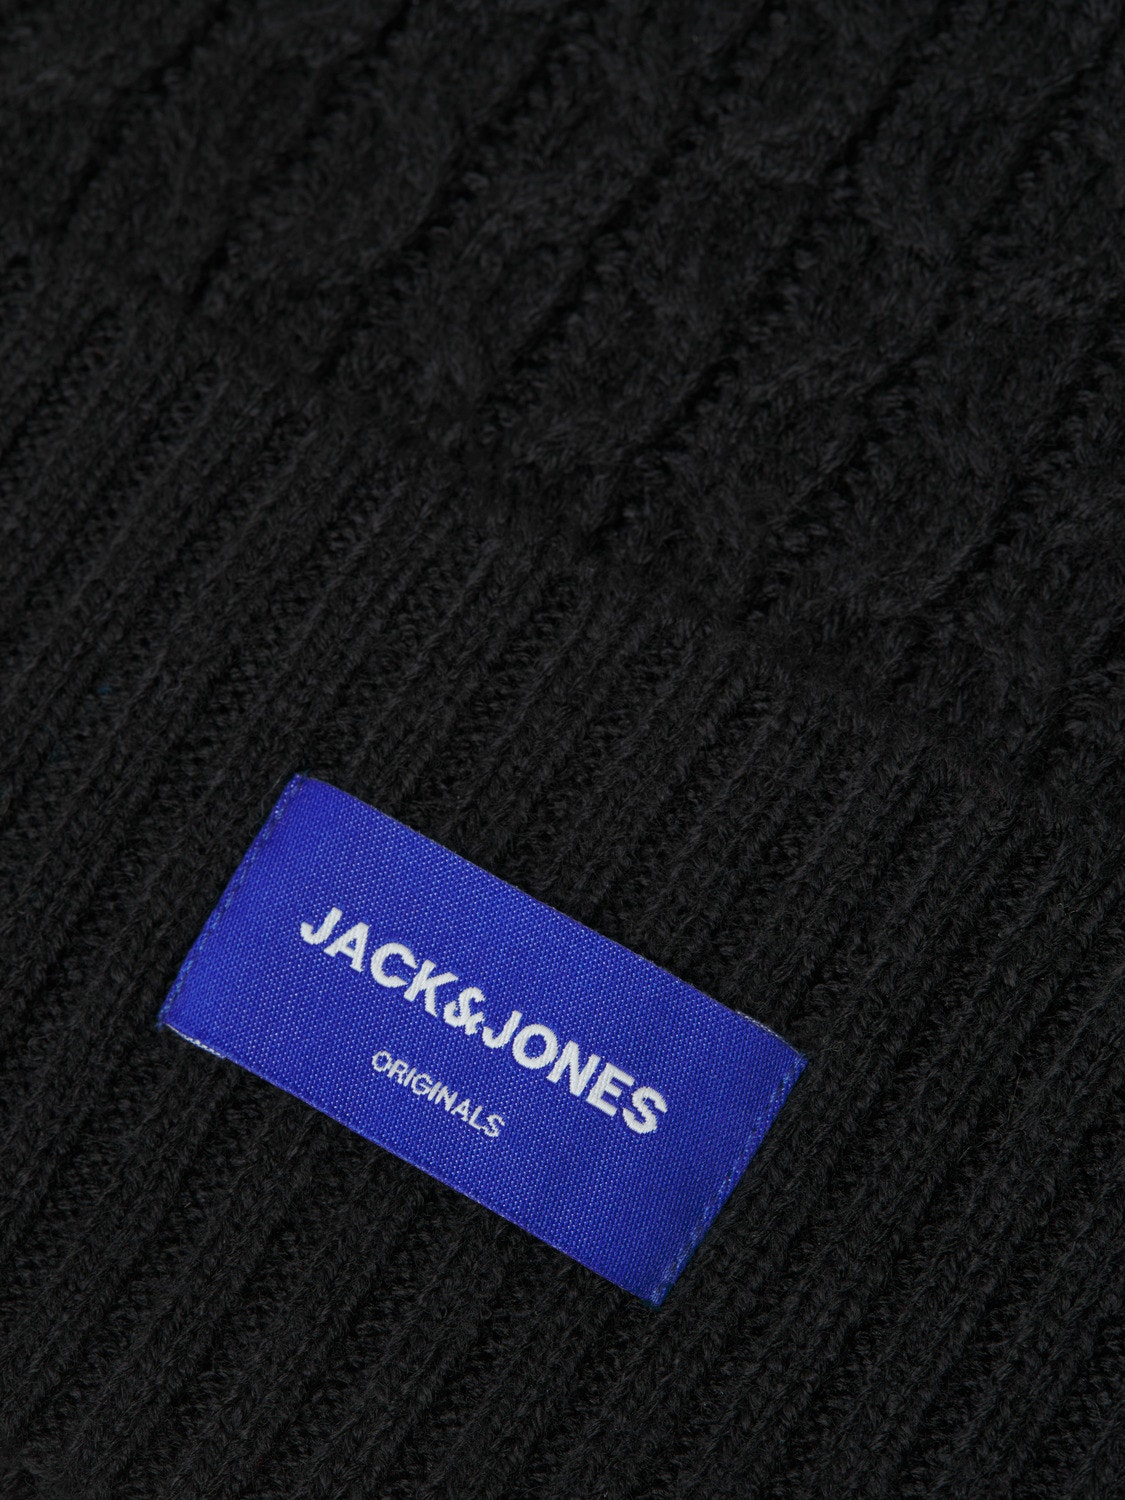 Jack & Jones Lue -Black - 12247260